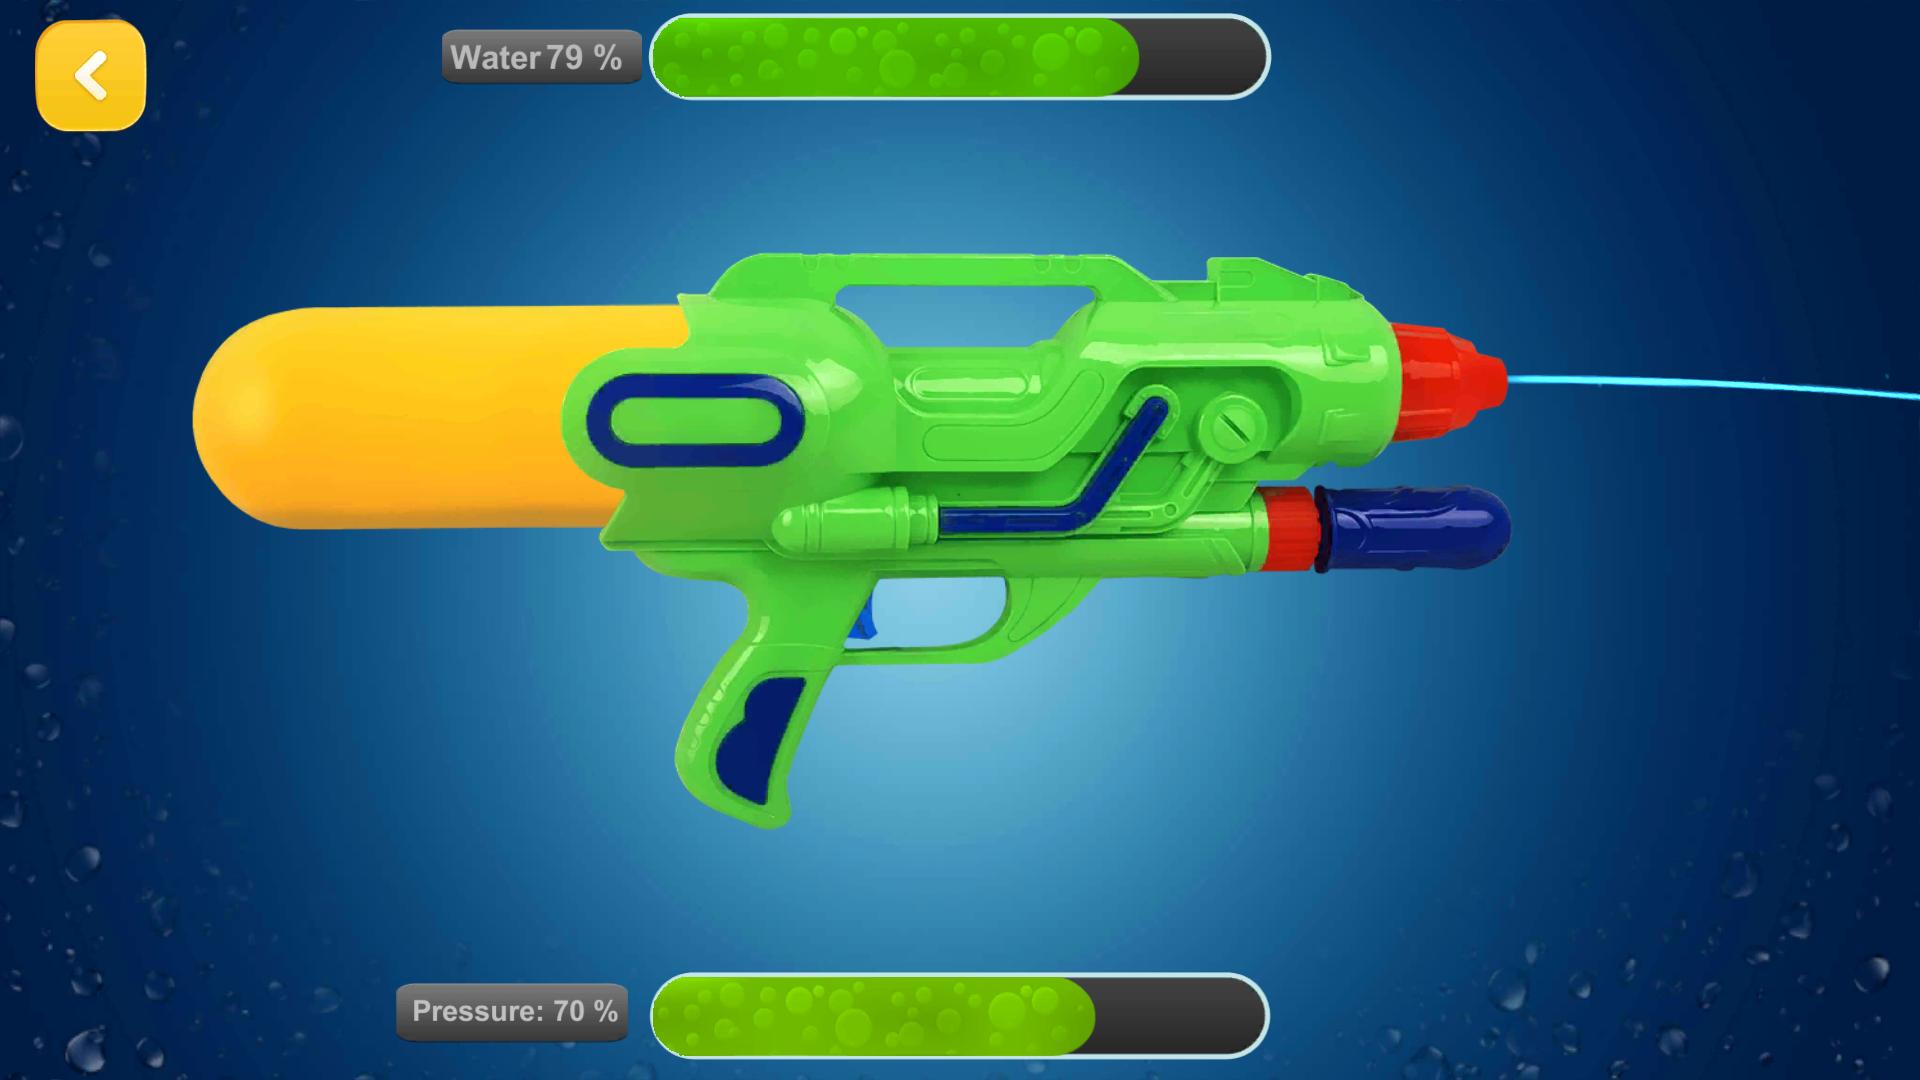 Water Gun Simulator For Android Apk Download - roblox gun simulator 1 youtube youtube video